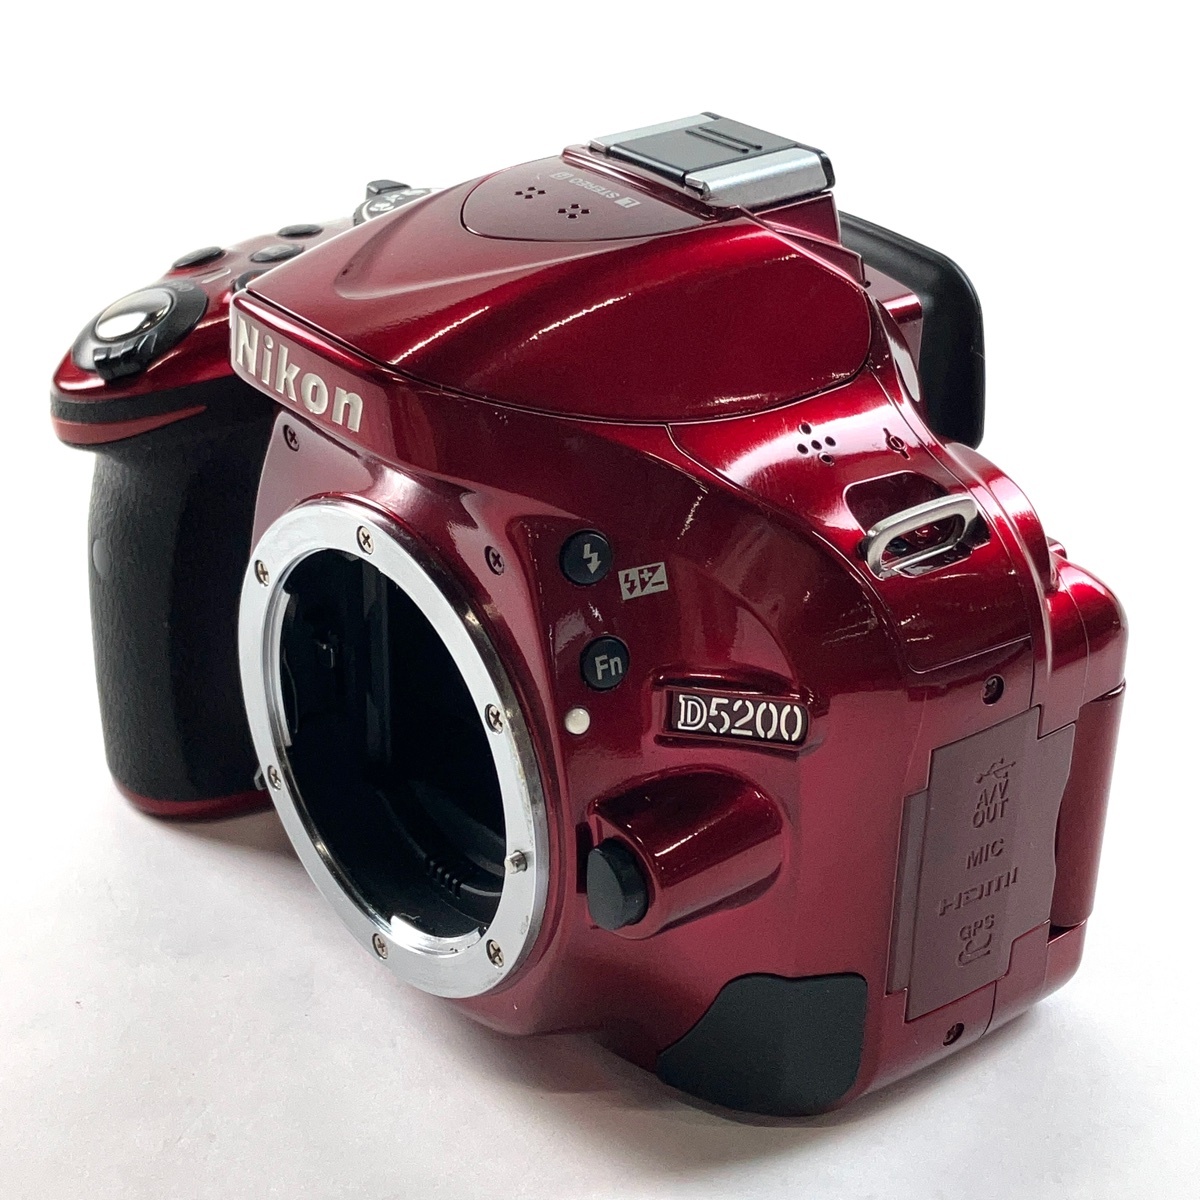 ニコン Nikon D5200 ボディ レッド デジタル 一眼レフカメラ 【中古】の画像2